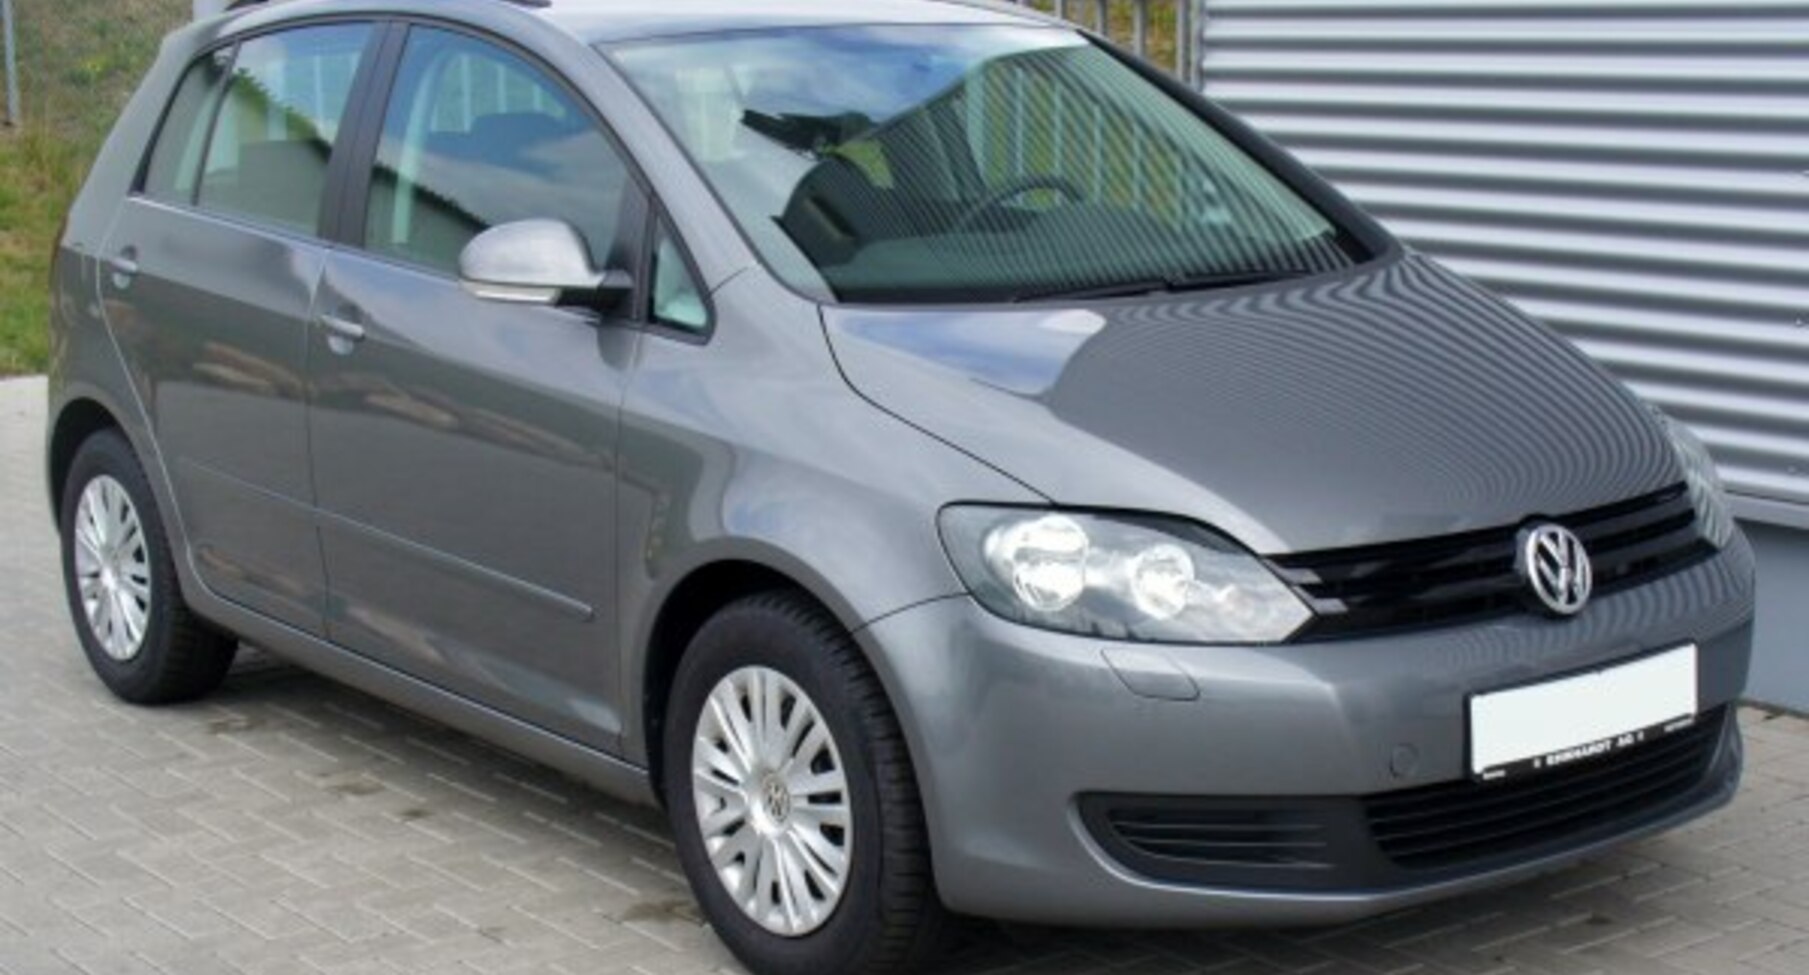 Volkswagen Golf VI Plus 1.4 (80 Hp) 2008, 2009, 2010, 2011, 2012, 2013, 2014 